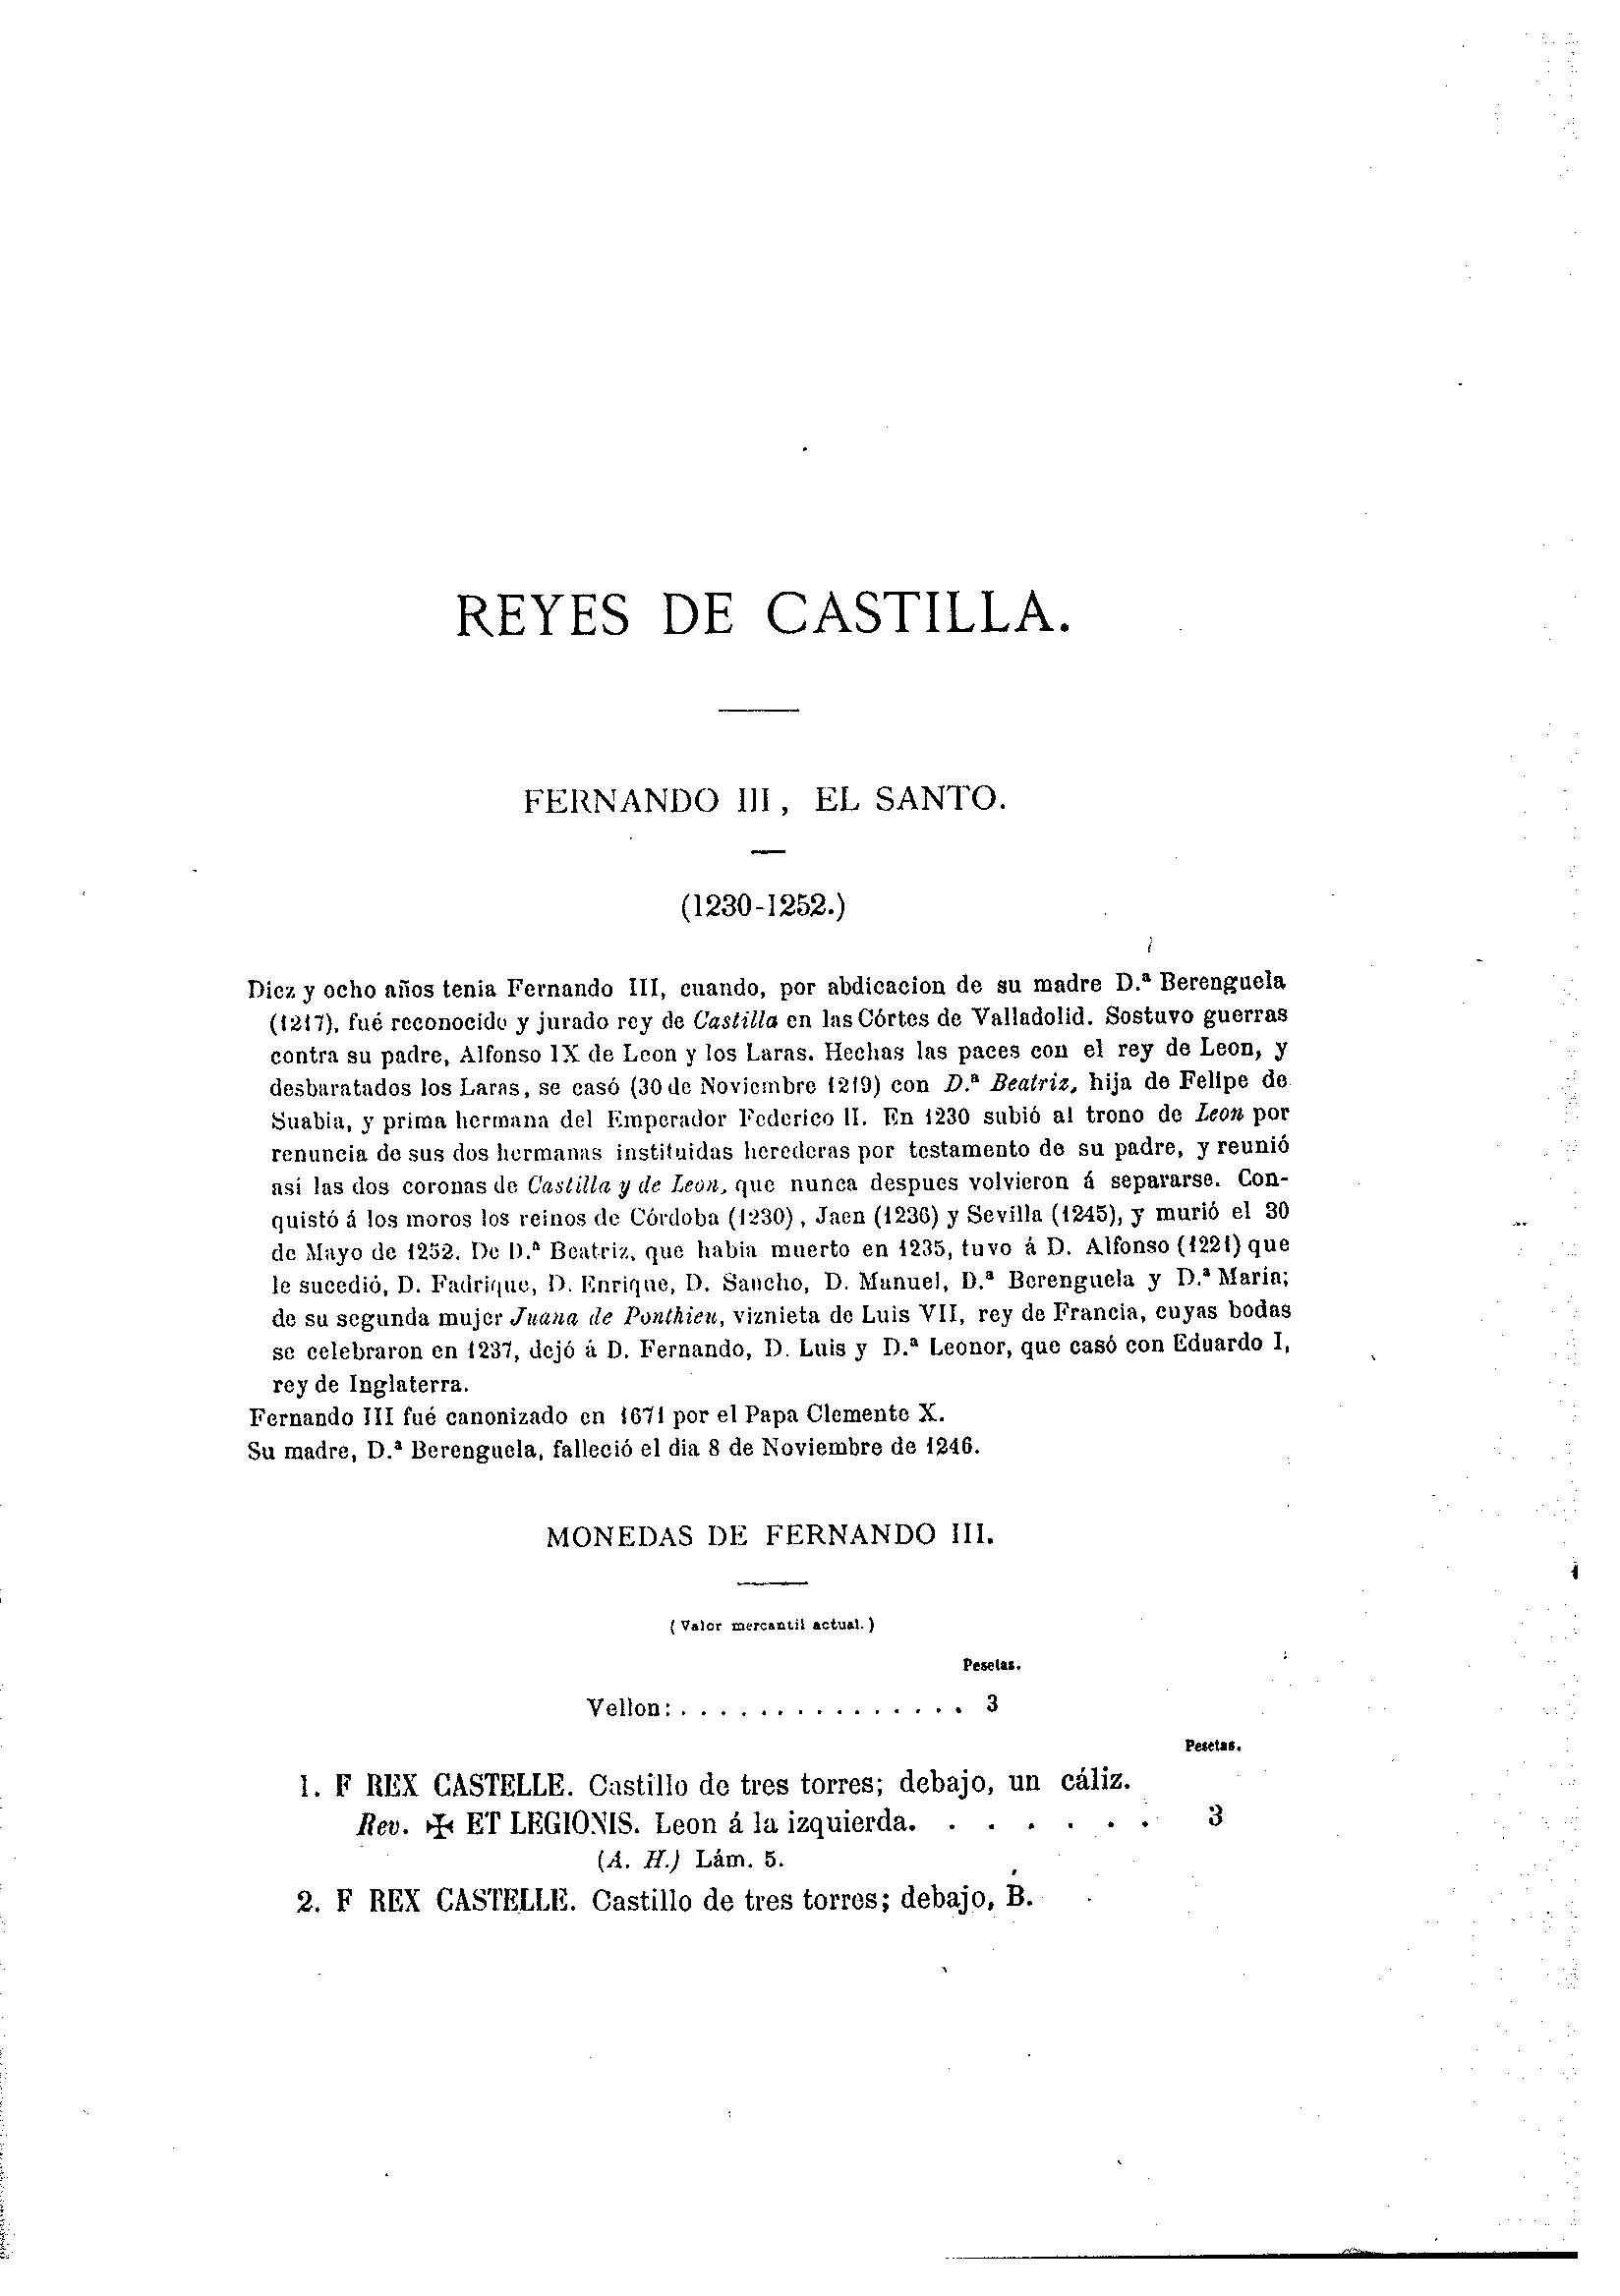 35 [Reyes de Castilla]